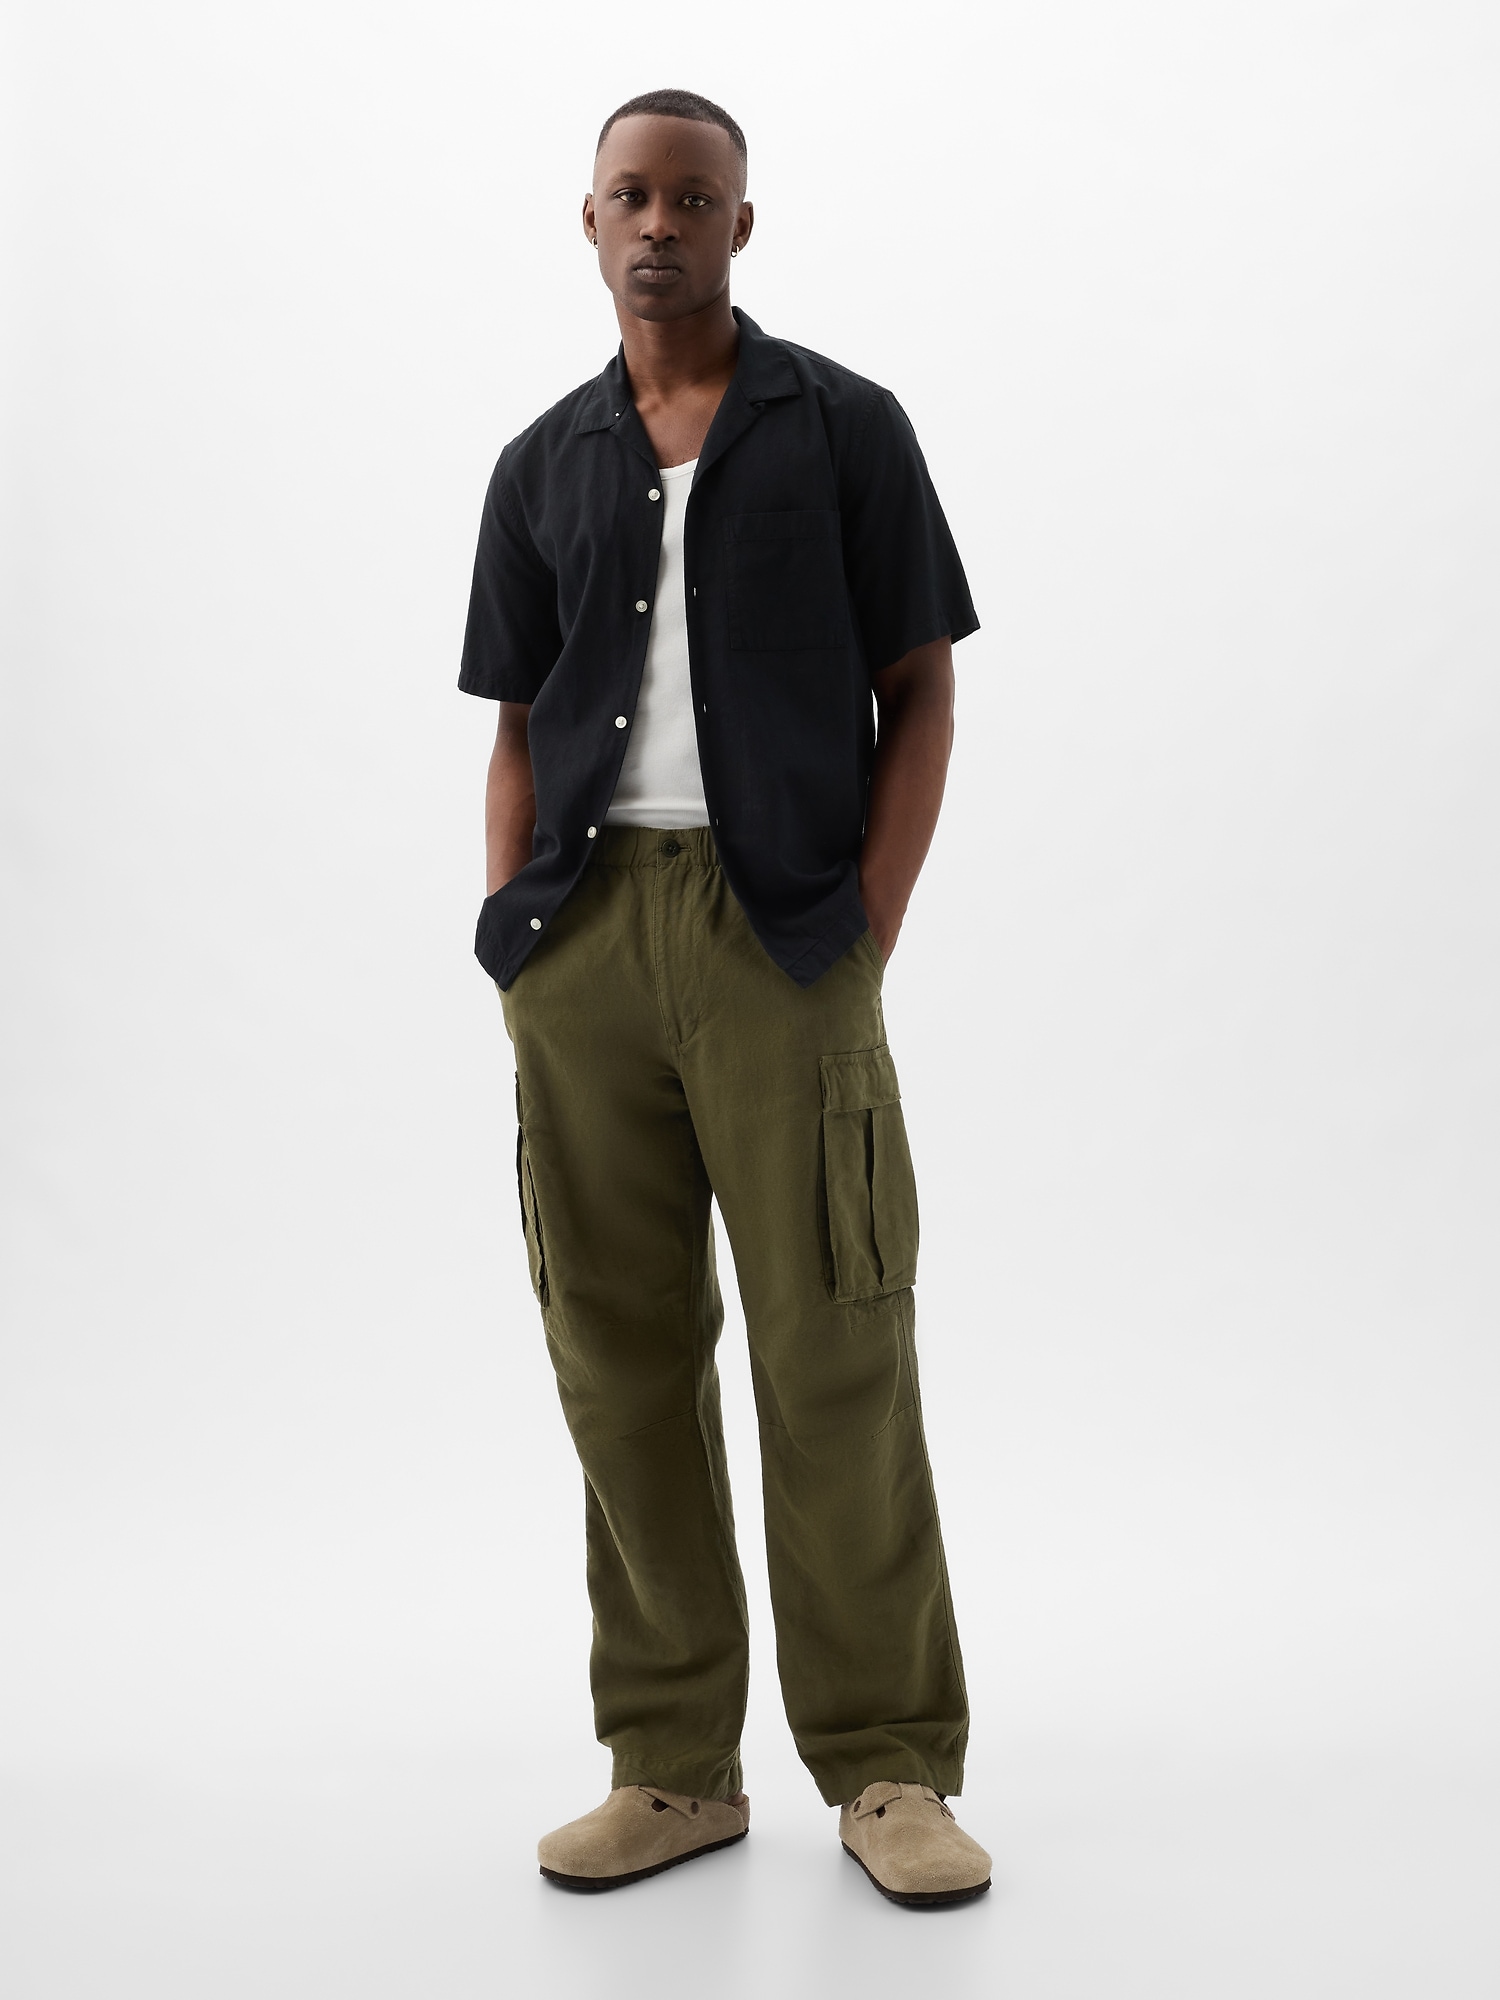 GAP Men's Super Soft Stretch Twill 5 Pocket Slim Fit Pant (Chinchilla,  40x30) - Walmart.com